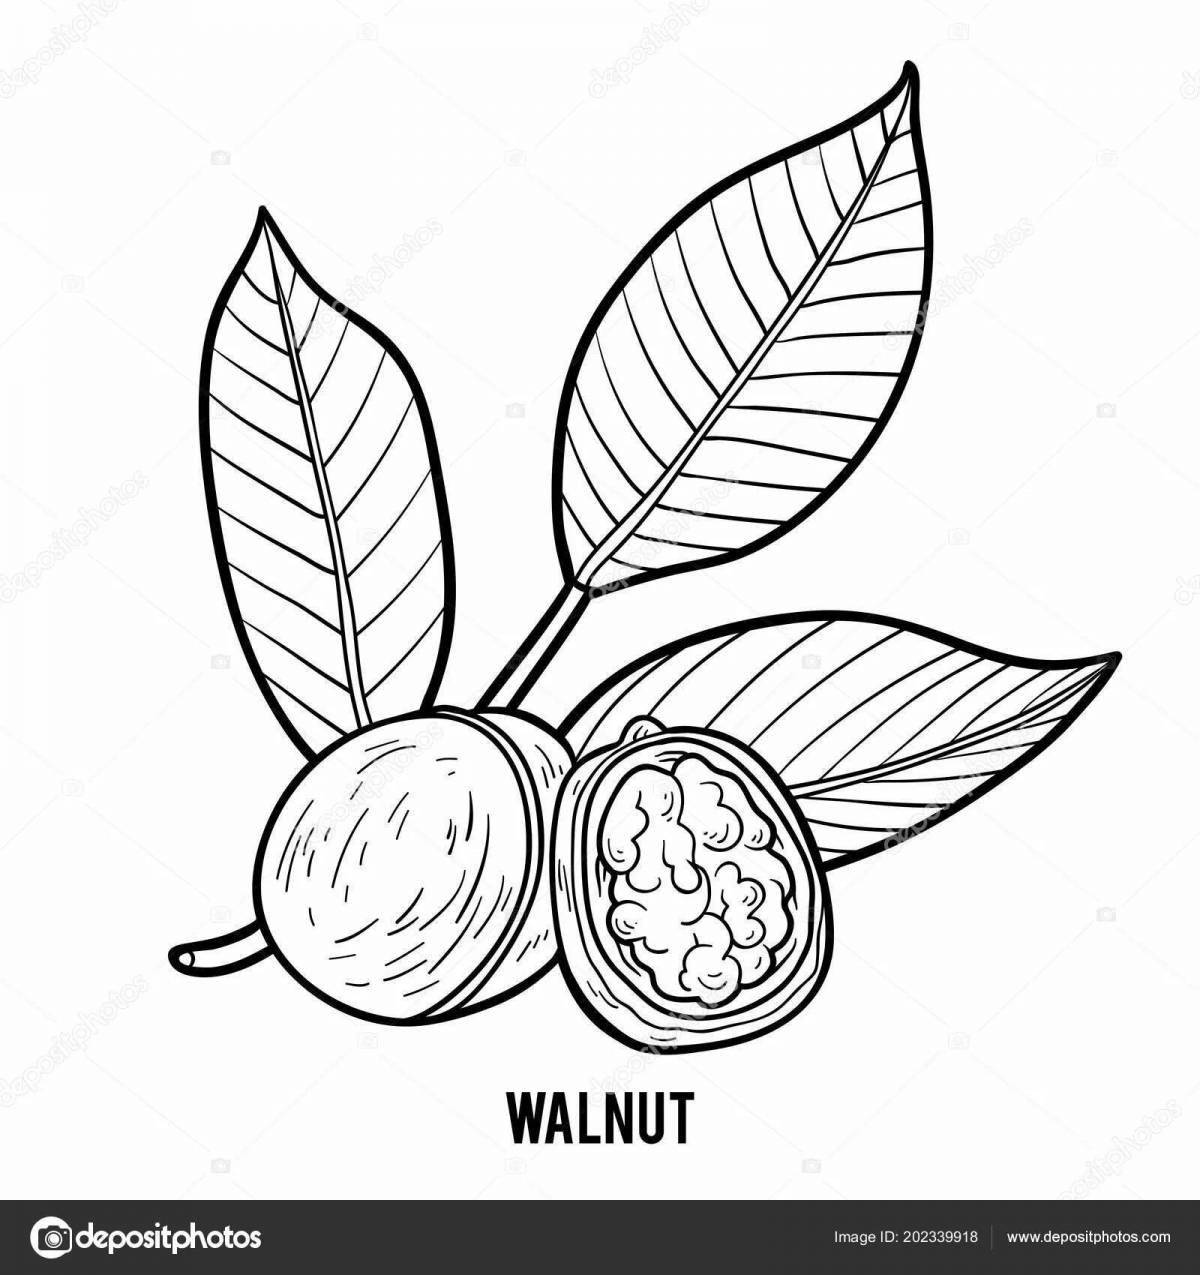 Vibrant walnut coloring book for preschoolers